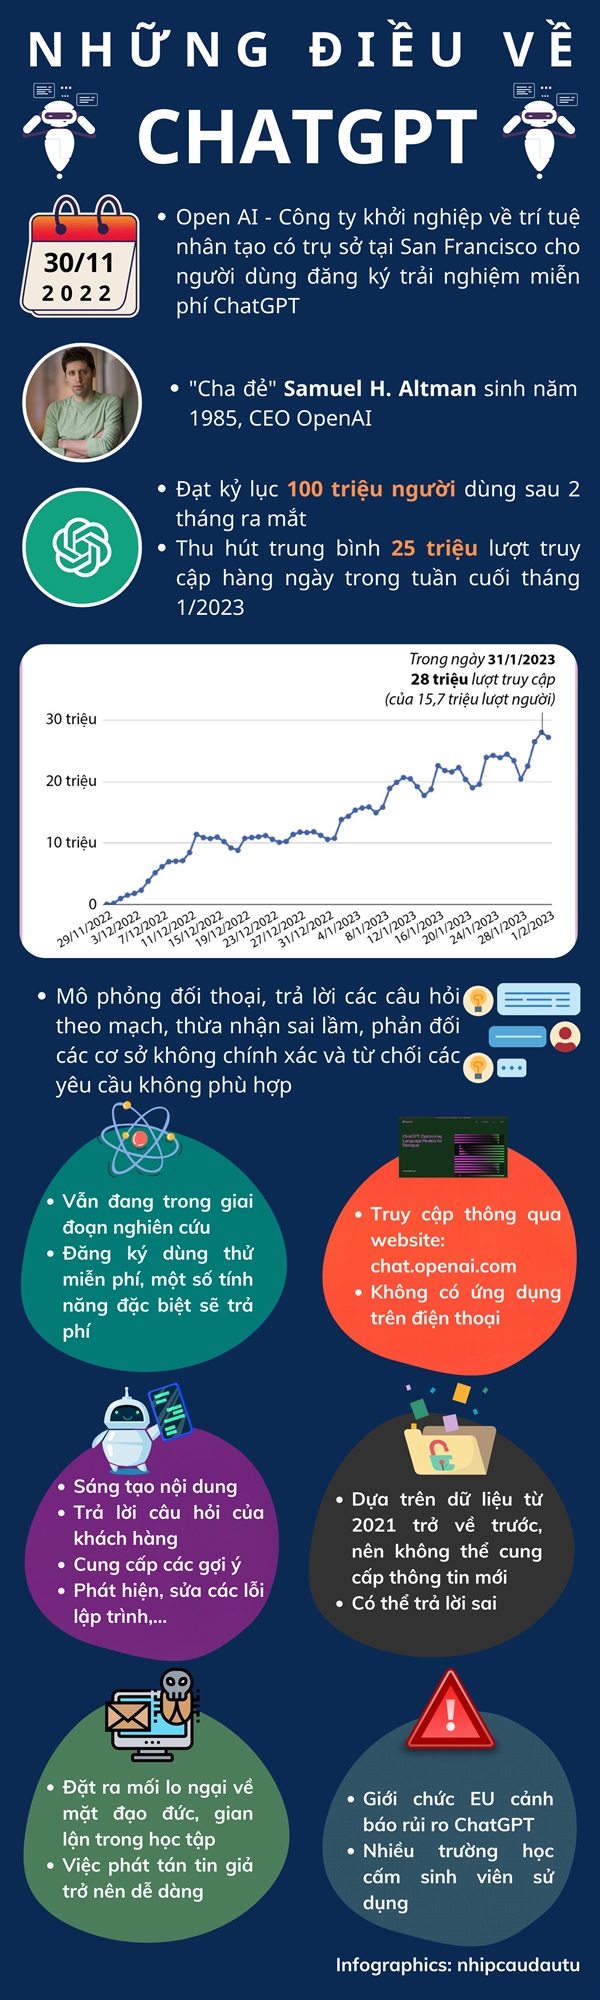 [Infographics] Nhung dieu can biet ve chatbot ChatGPT